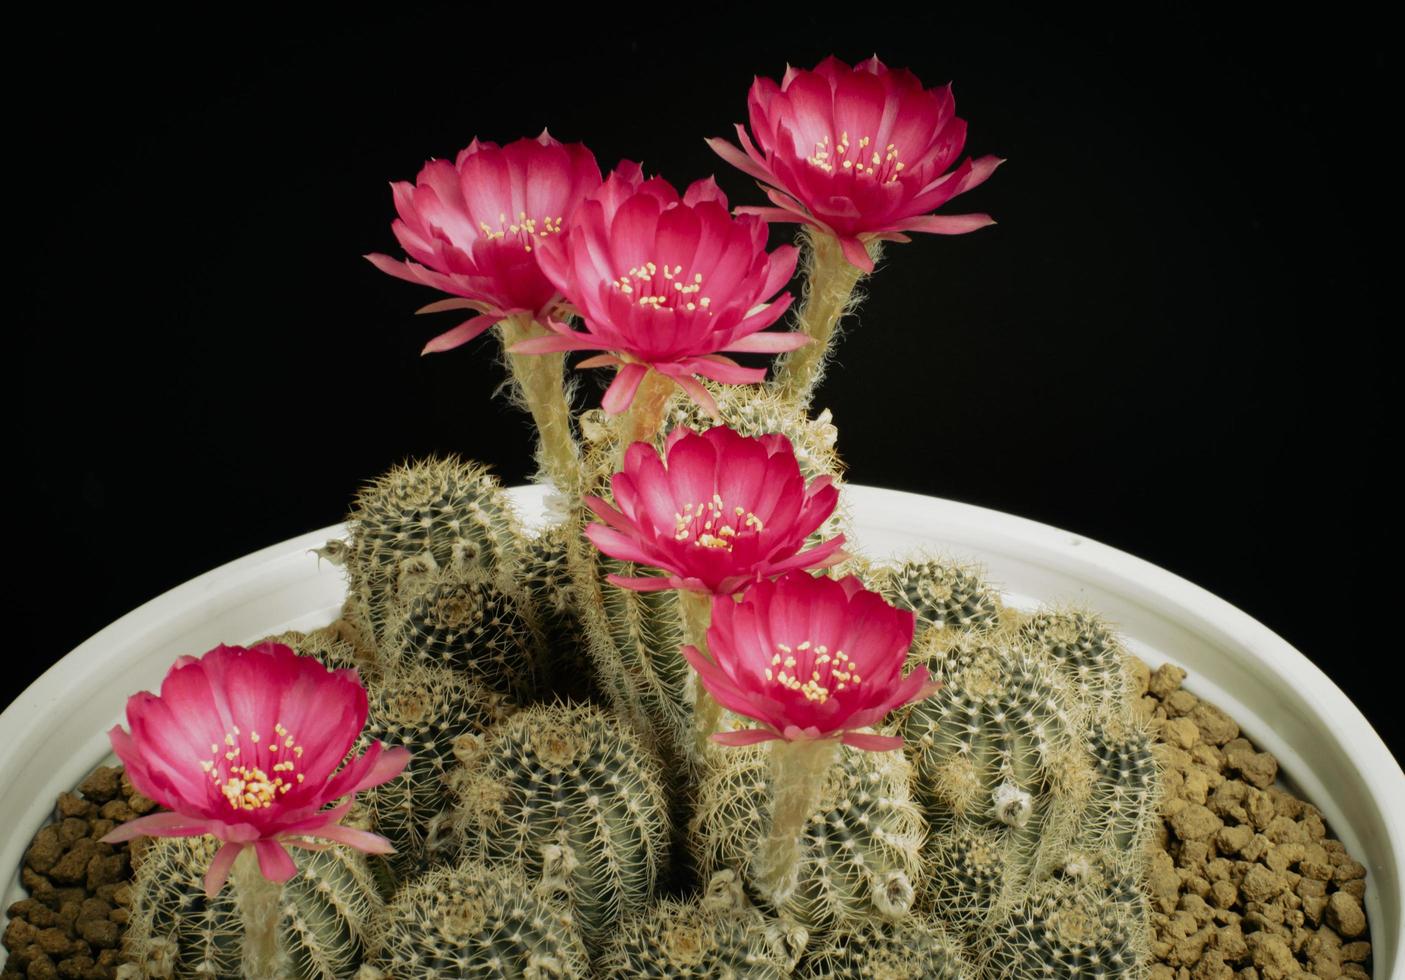 rosa oscuro o rojo claro muchas flores de un cactus o cactus. grupo de  cactus en